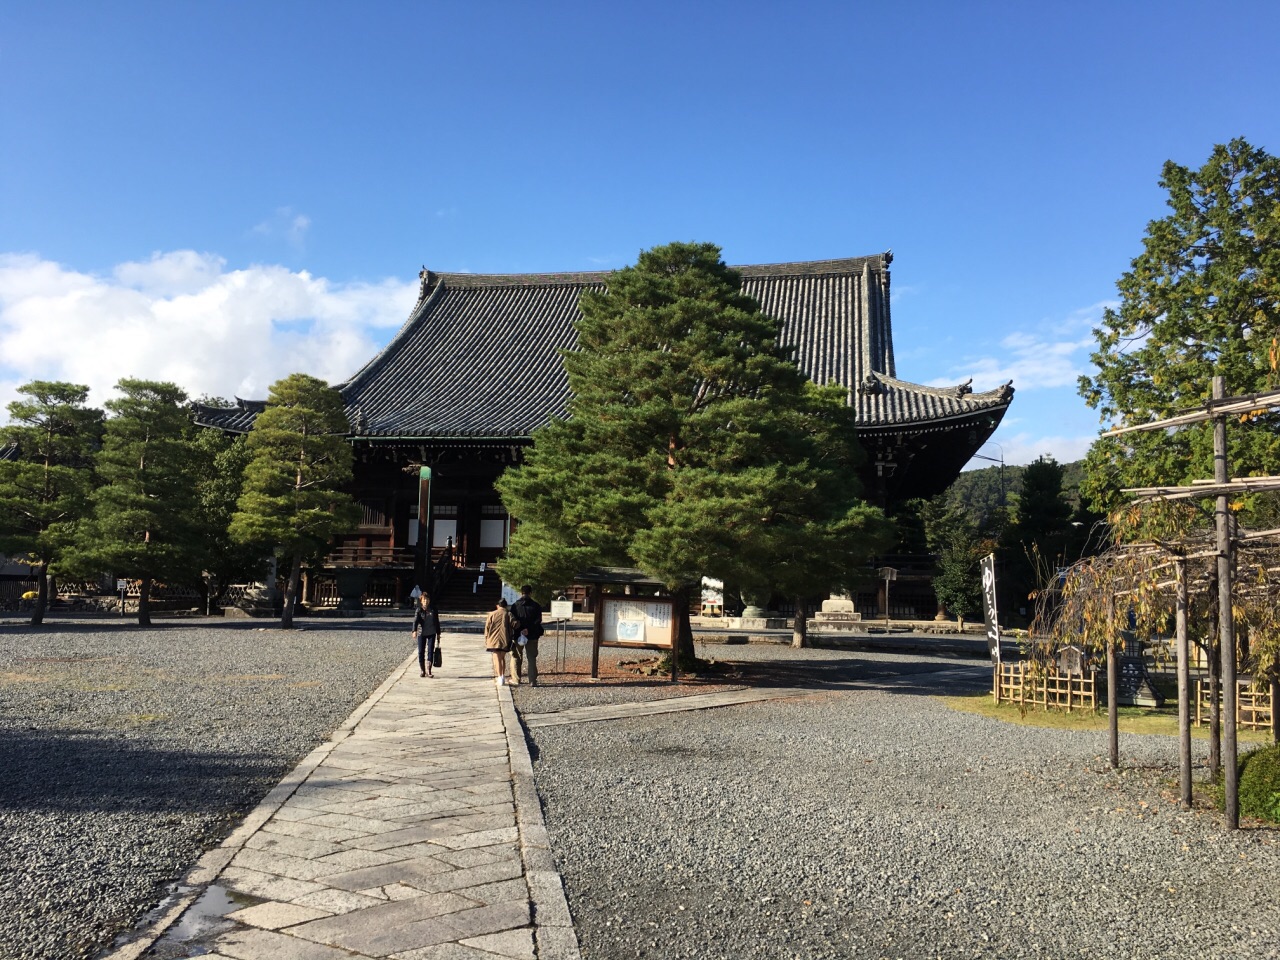 应该和五台山清凉寺属于同一宗派,日本相对少见的禅宗寺庙.